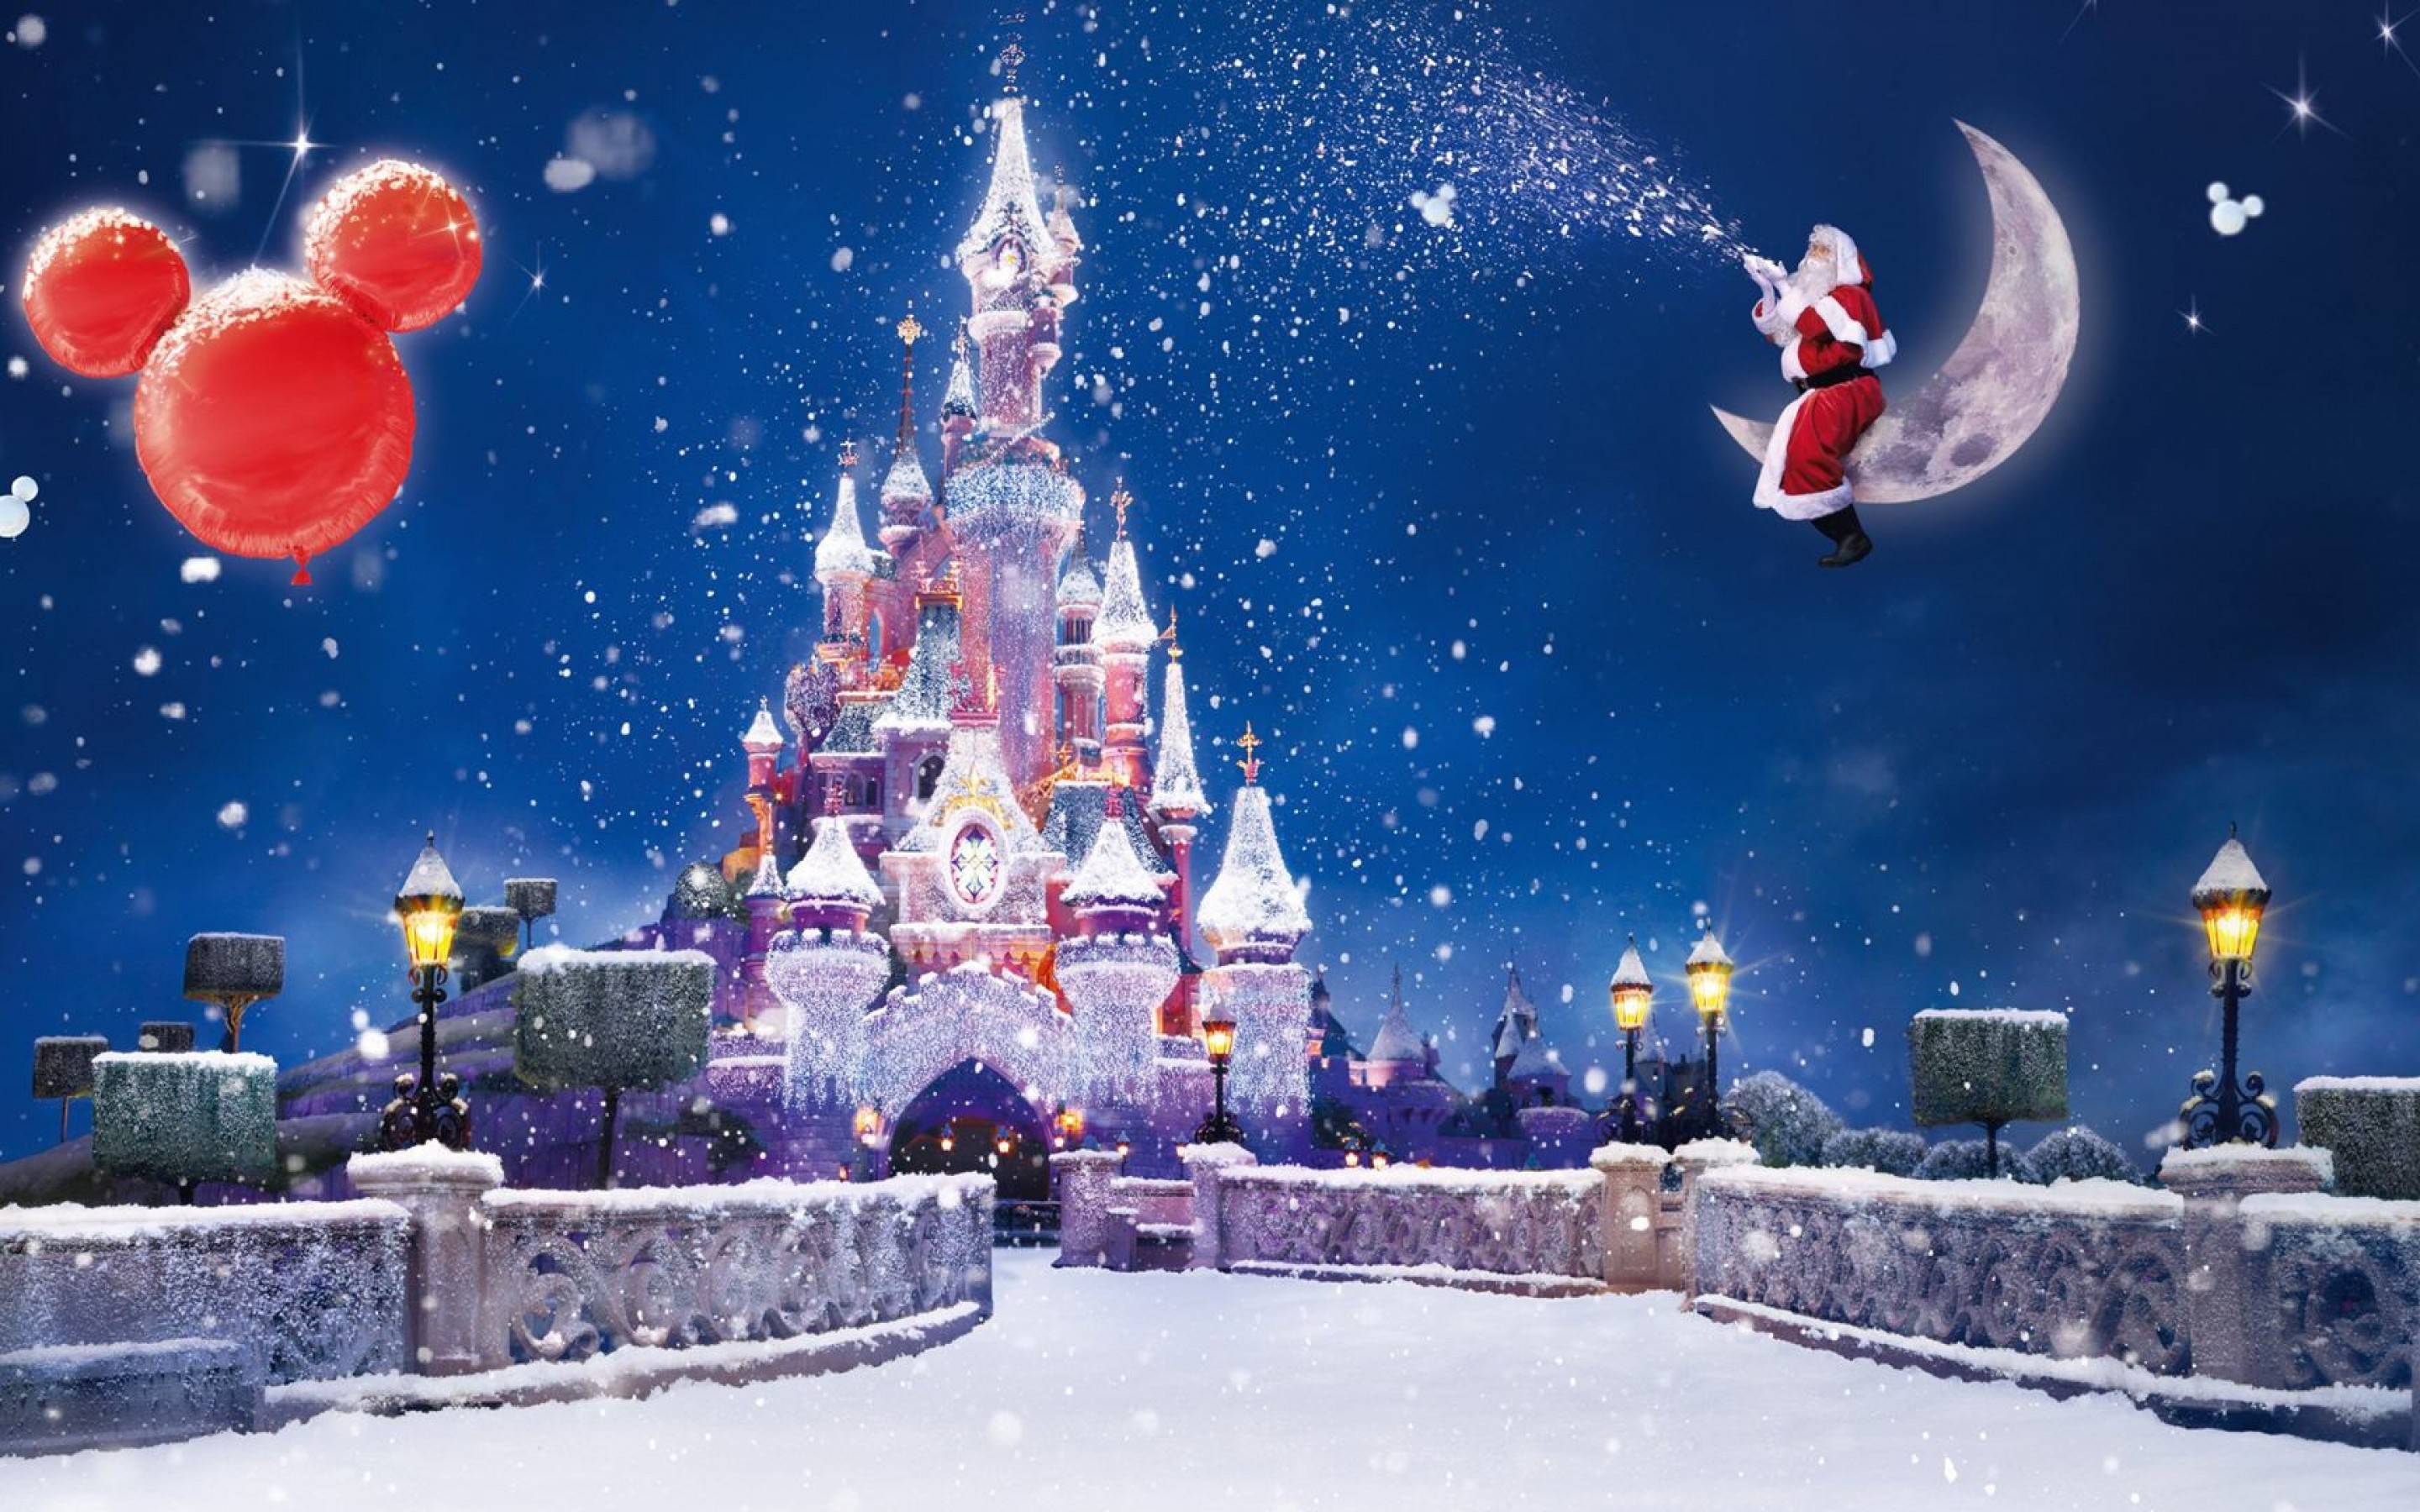 Hình nền Disney Giáng Sinh sẽ khiến bạn cảm thấy rộn ràng và vui tươi mỗi khi nhìn vào màn hình máy tính của mình. Vào mùa này, đừng quên cập nhật hình nền mới để tạo sự phấn khích cho ngày lễ đặc biệt.